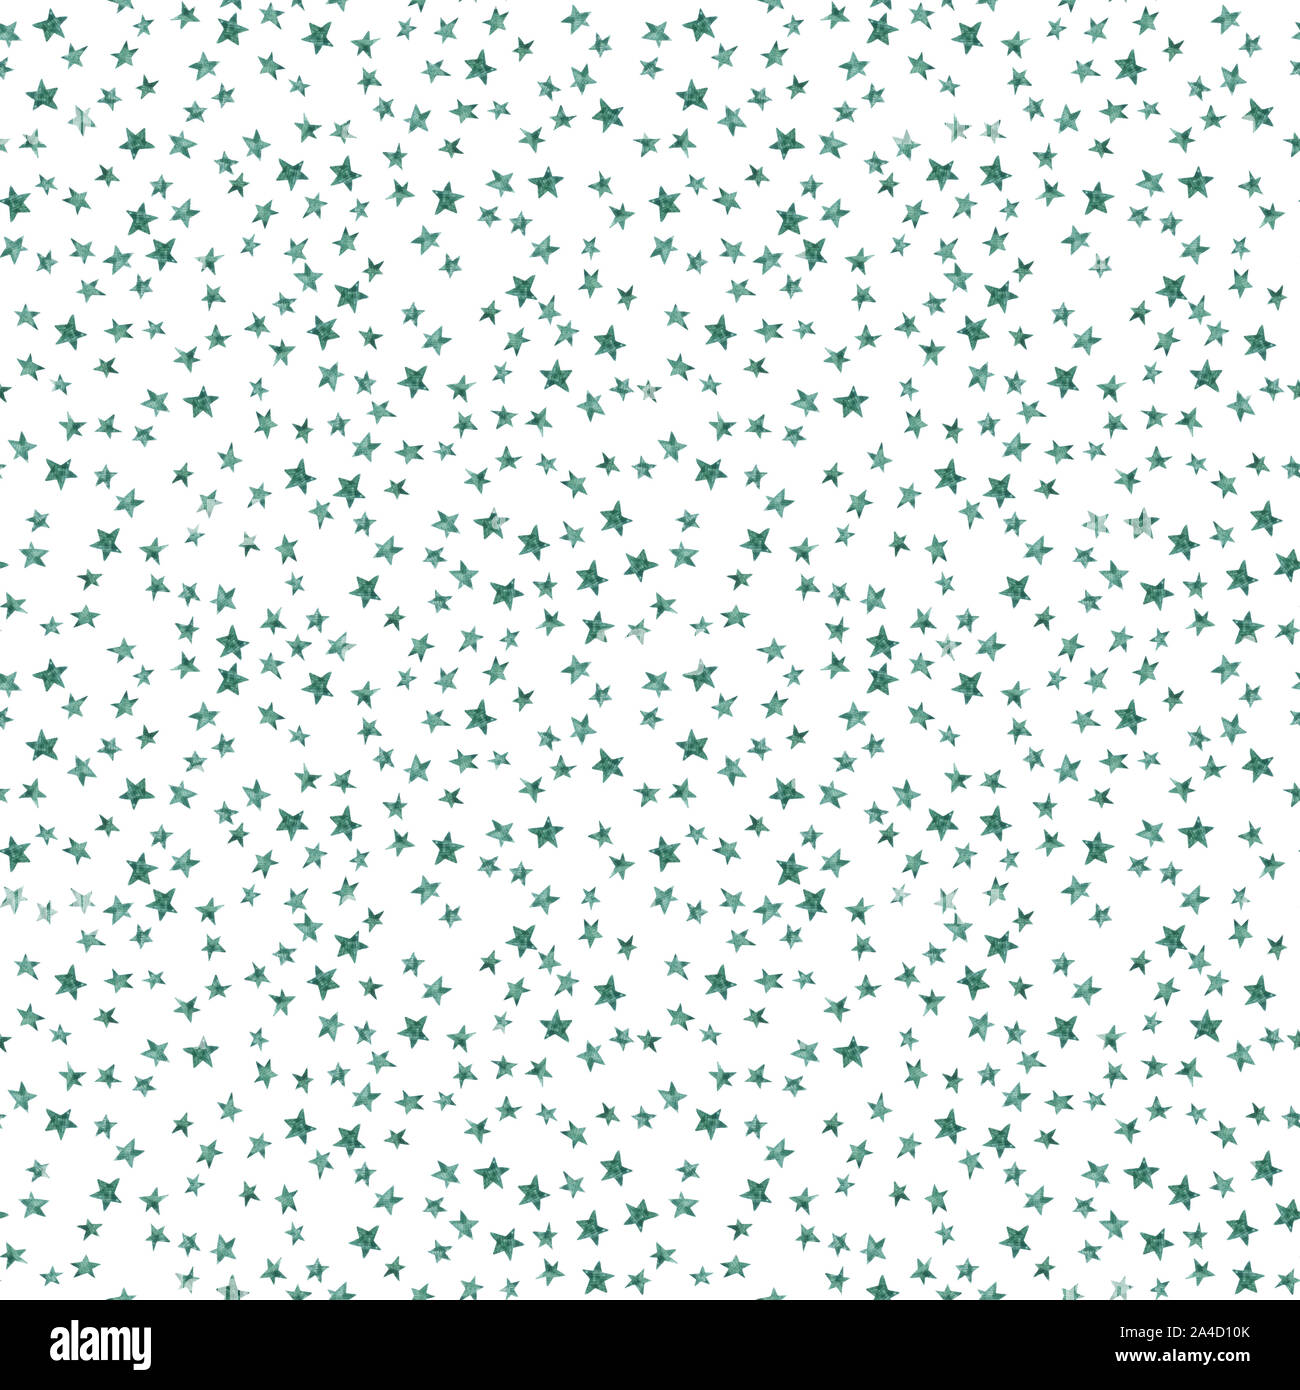 Cielo stellato seamless pattern con semplici stelle su sfondo bianco. Acquerello doodle illustrazione. Colore dell'acqua star modello ripetitivo. Le costellazioni Foto Stock